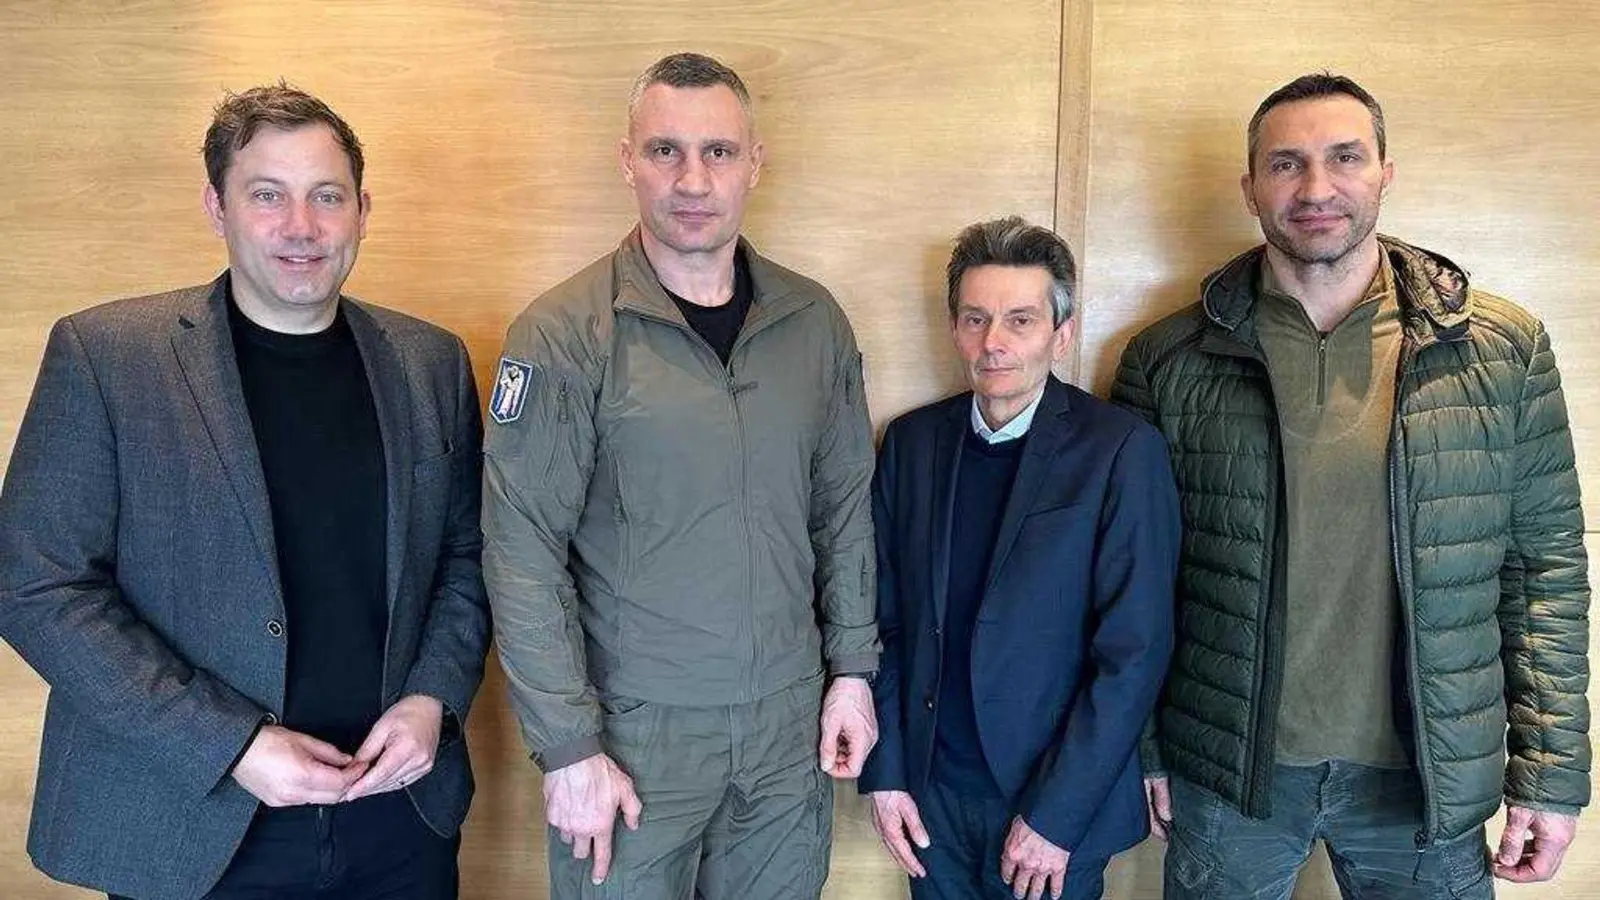 Lars Klingbeil (l) und Rolf Mützenich (3.v.l) sind in Kiew mit Bürgermeister Vitali Klitschko (2.v.l.) und dessen Bruder Wladimir Klitschko zusammengetroffen (Foto: Fionn Große/SPD/dpa)